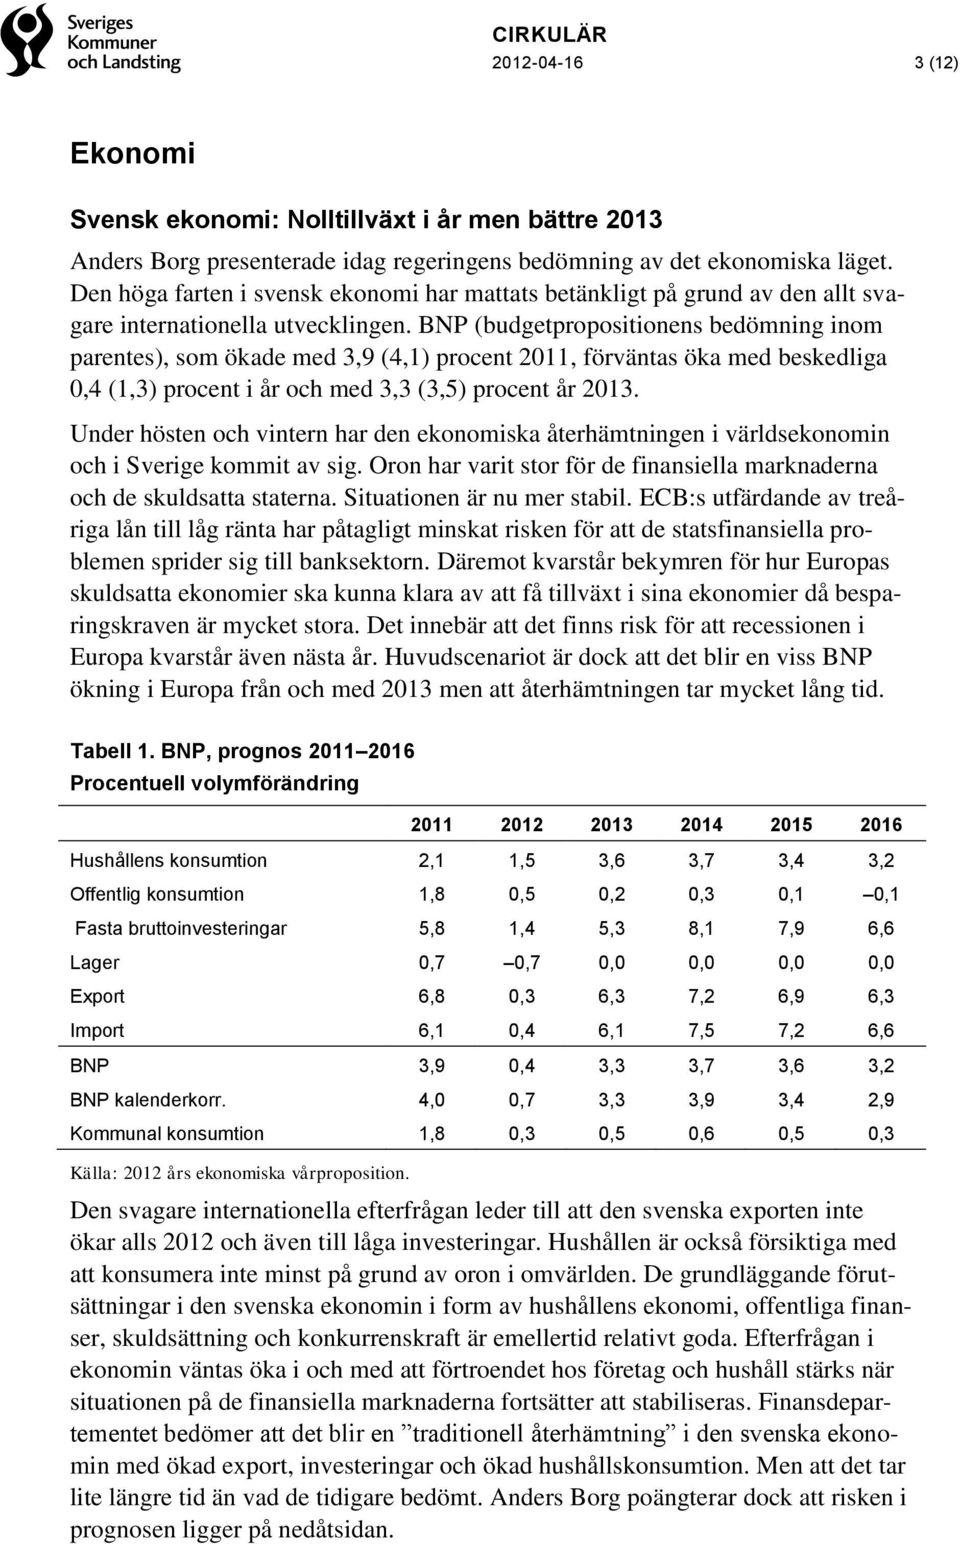 BNP (budgetpropositionens bedömning inom parentes), som ökade med 3,9 (4,1) procent 2011, förväntas öka med beskedliga 0,4 (1,3) procent i år och med 3,3 (3,5) procent år 2013.